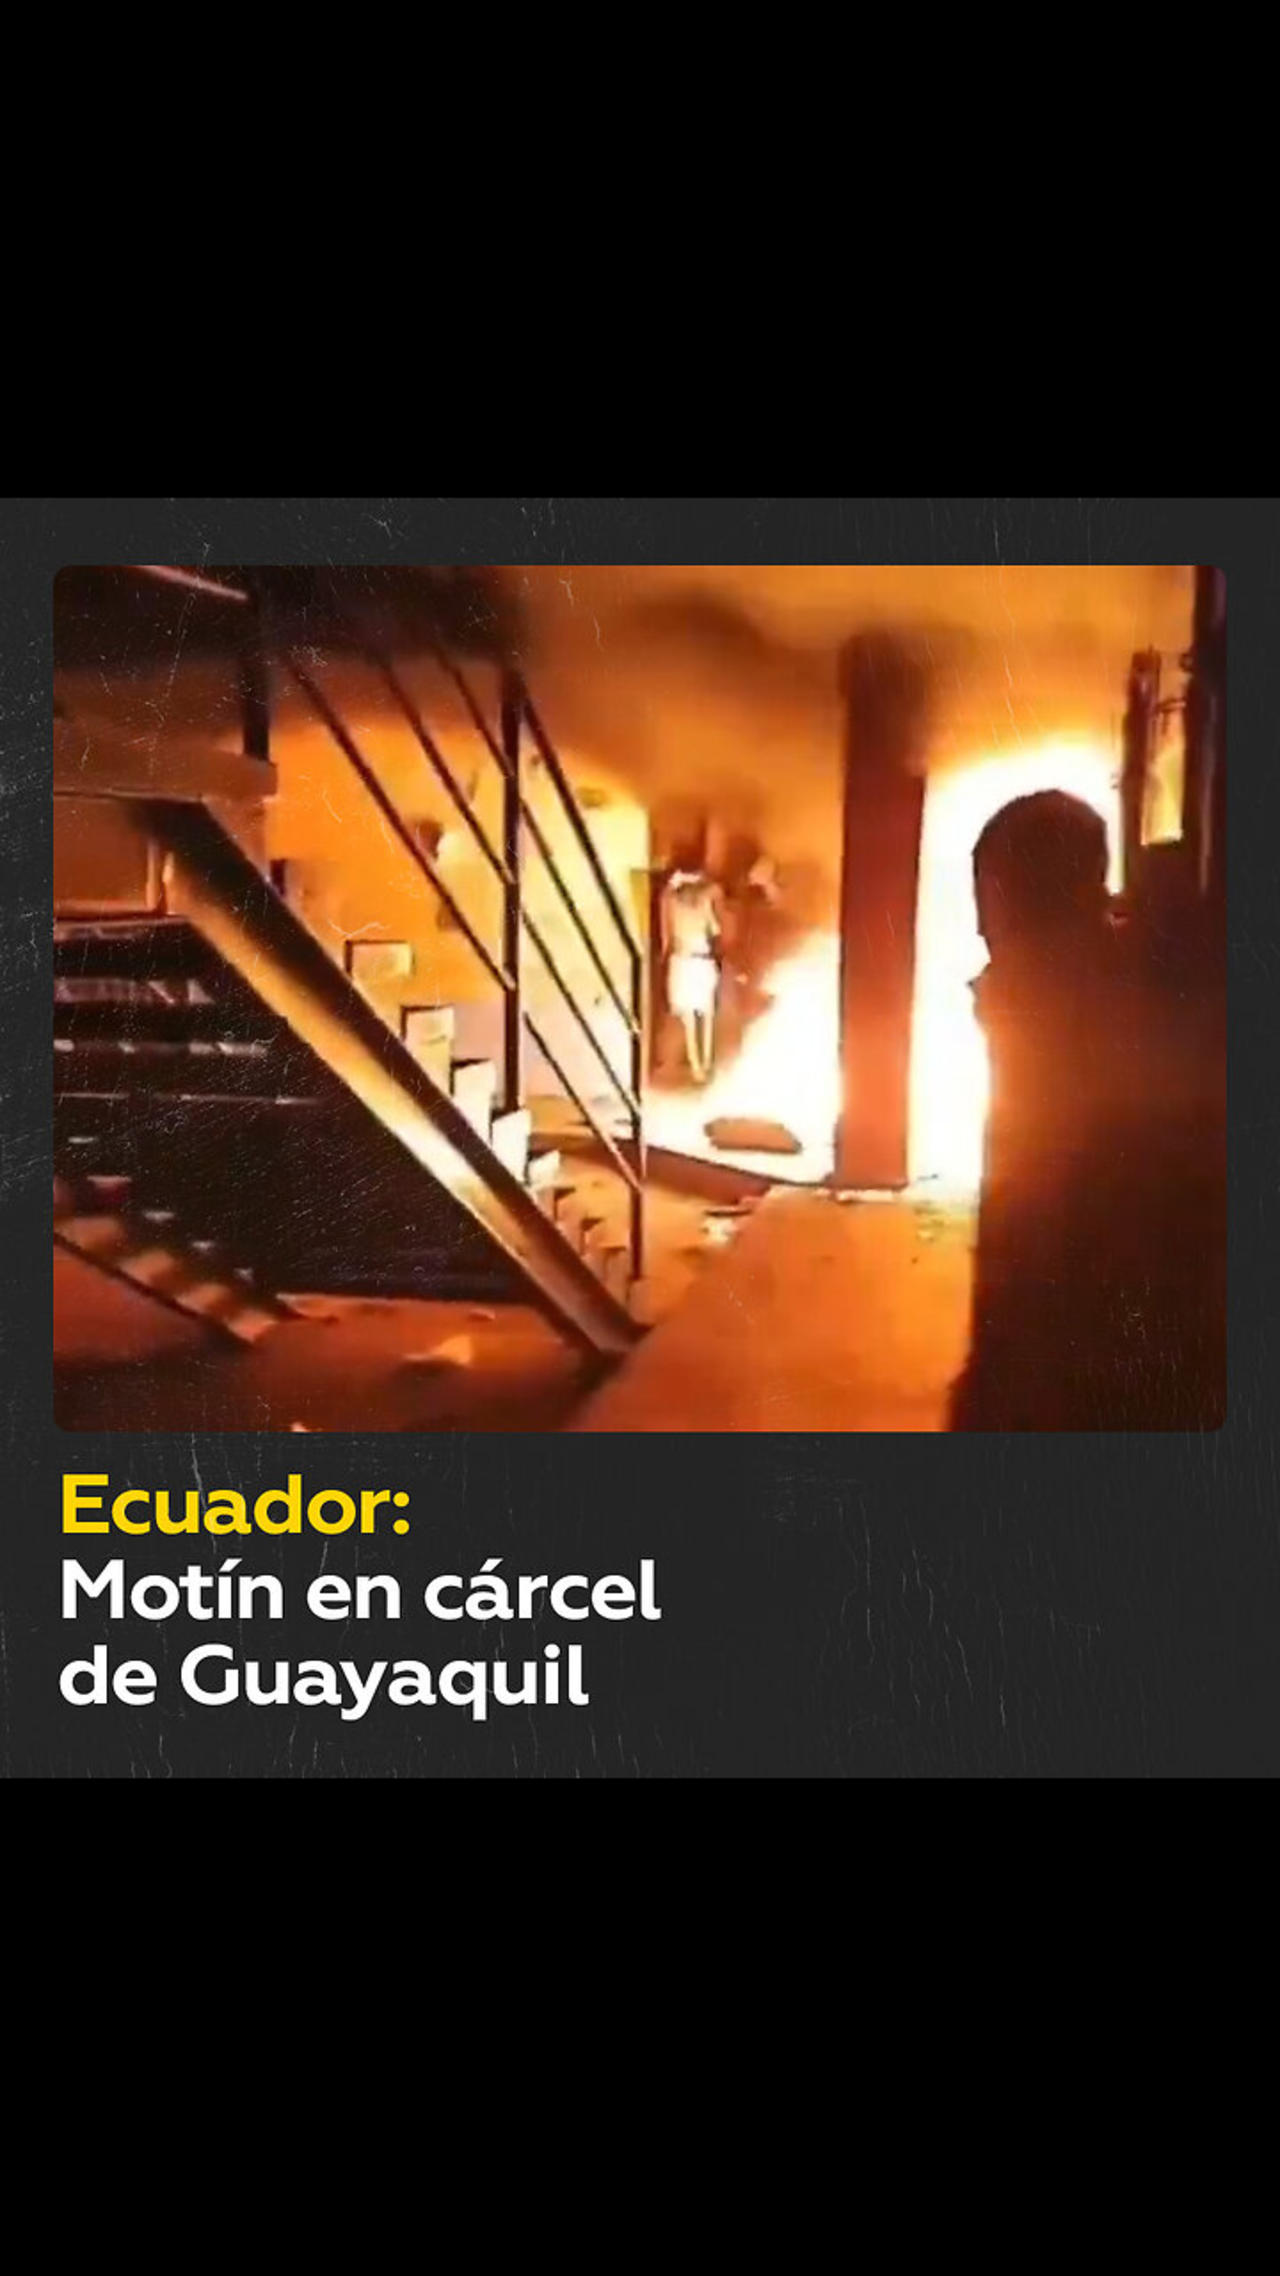 Se amotinan presos en una cárcel ecuatoriana en Guayaquil